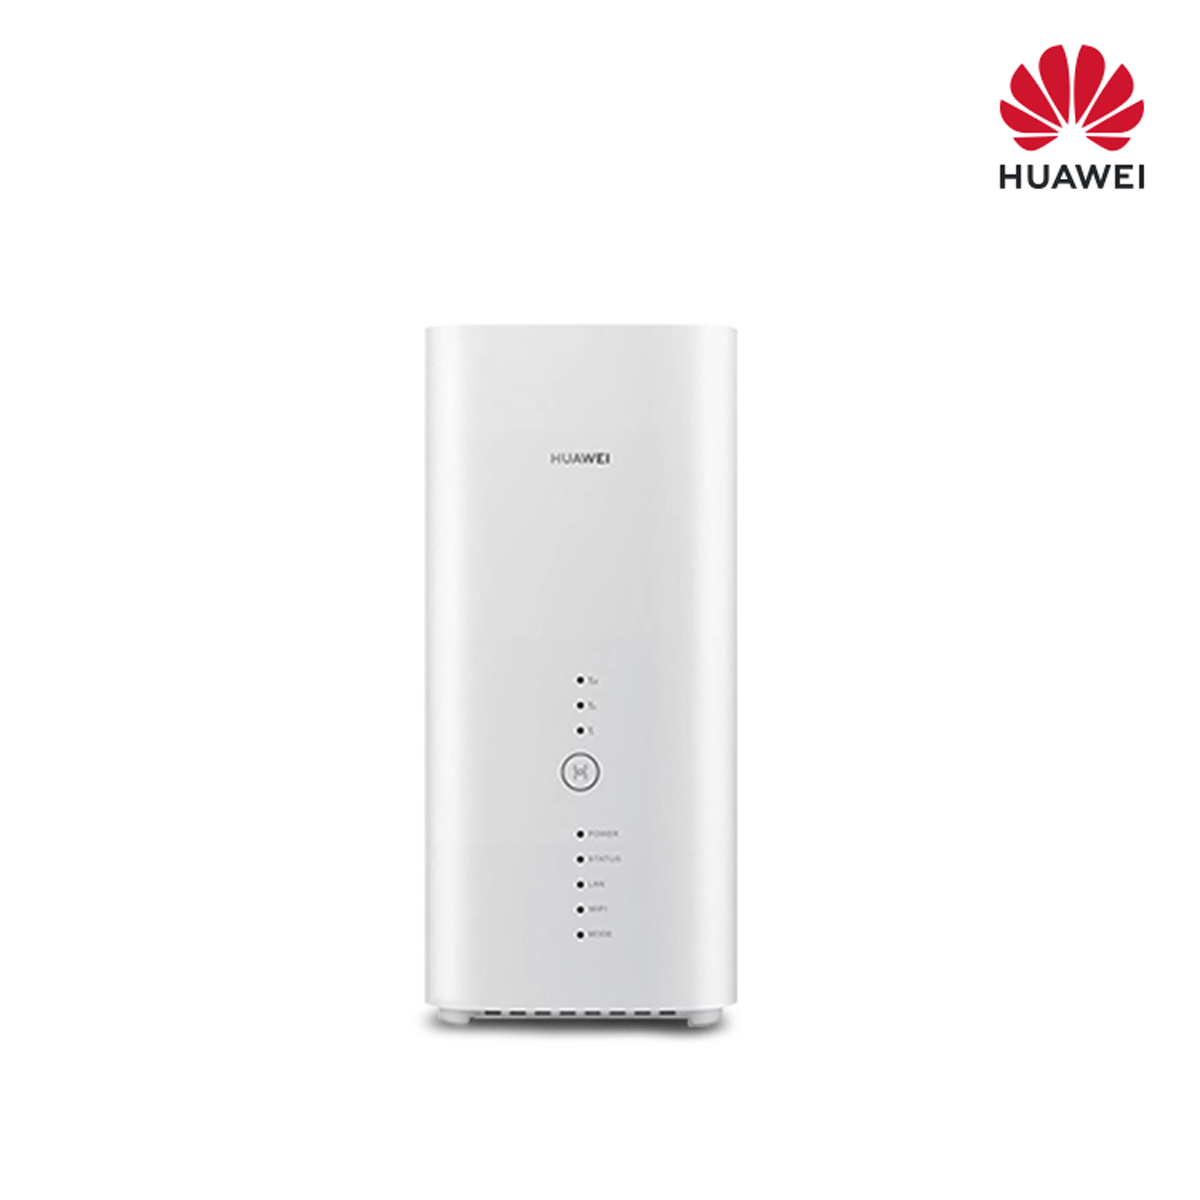 Huawei-B818-263-4G+-Router